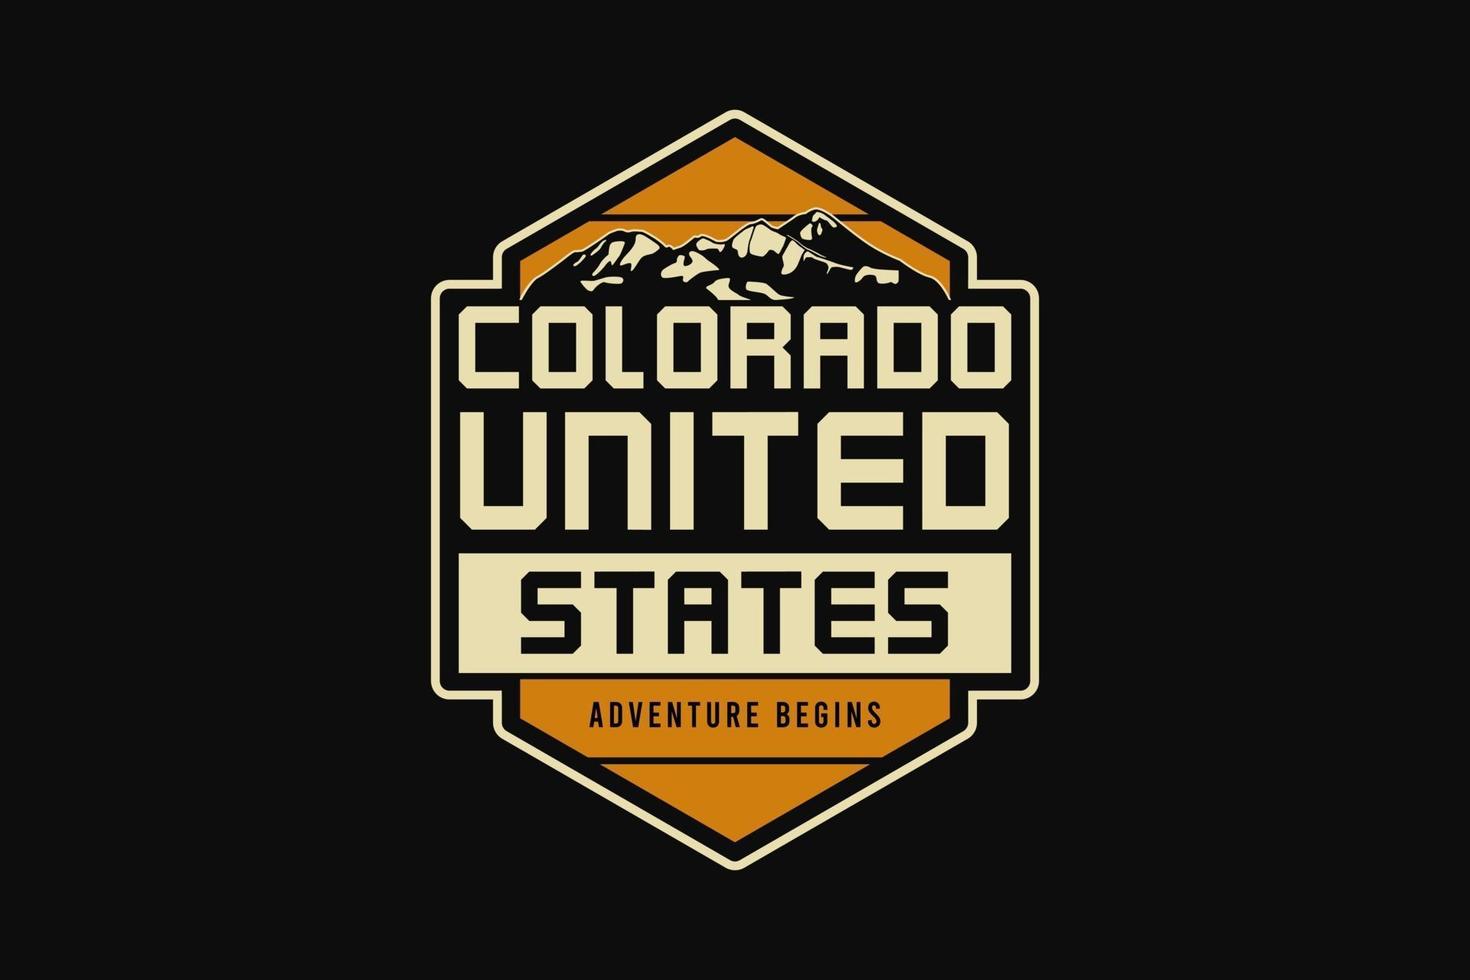 Colorado united states, silhouette retro style vector